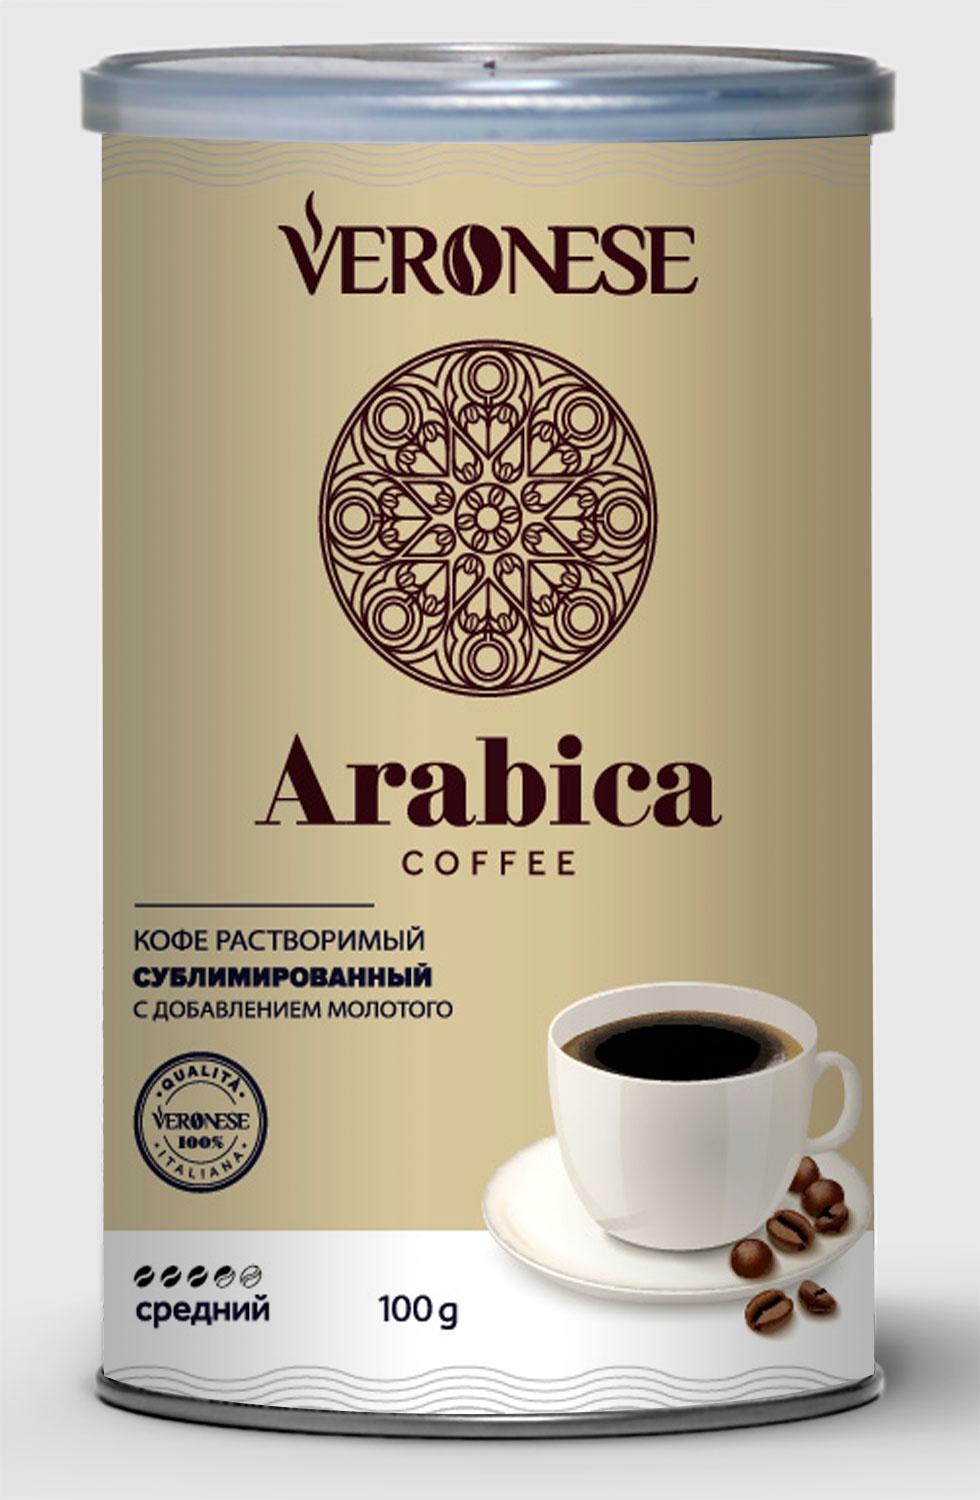 Кофе арабика банка. Кофе молотый Veronese Arabica. Veronese Арабика Veronese кофе. Кофе Arabica 100 % растворимый сублимированный. Кофе сублимированный и растворимый Арабика 100гр.